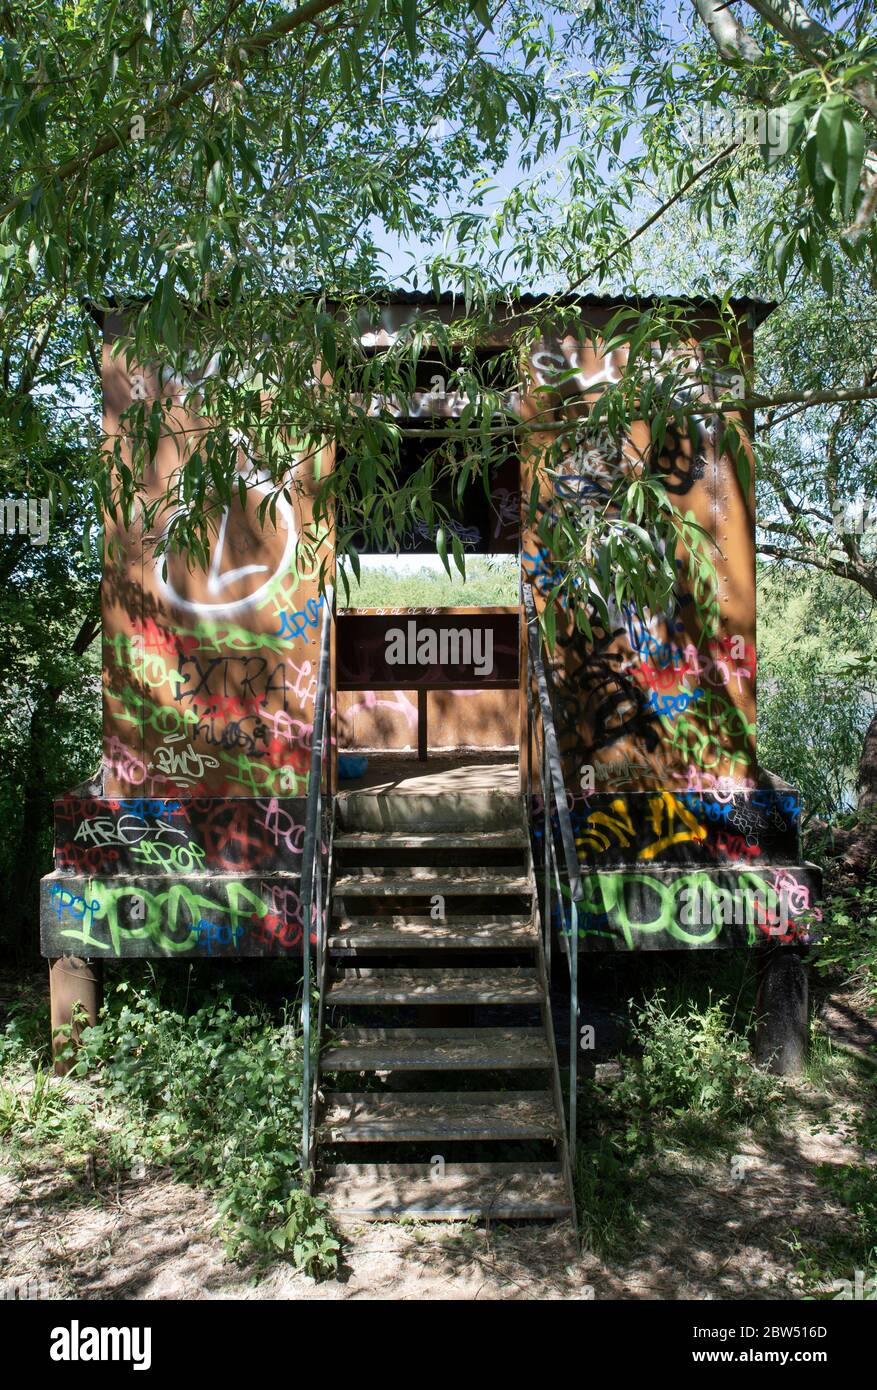 Vogelbeobachtung versteckt in Graffiti, Brent Reservoir, auch bekannt als Welsh Harp Reservoir, London, Großbritannien Stockfoto